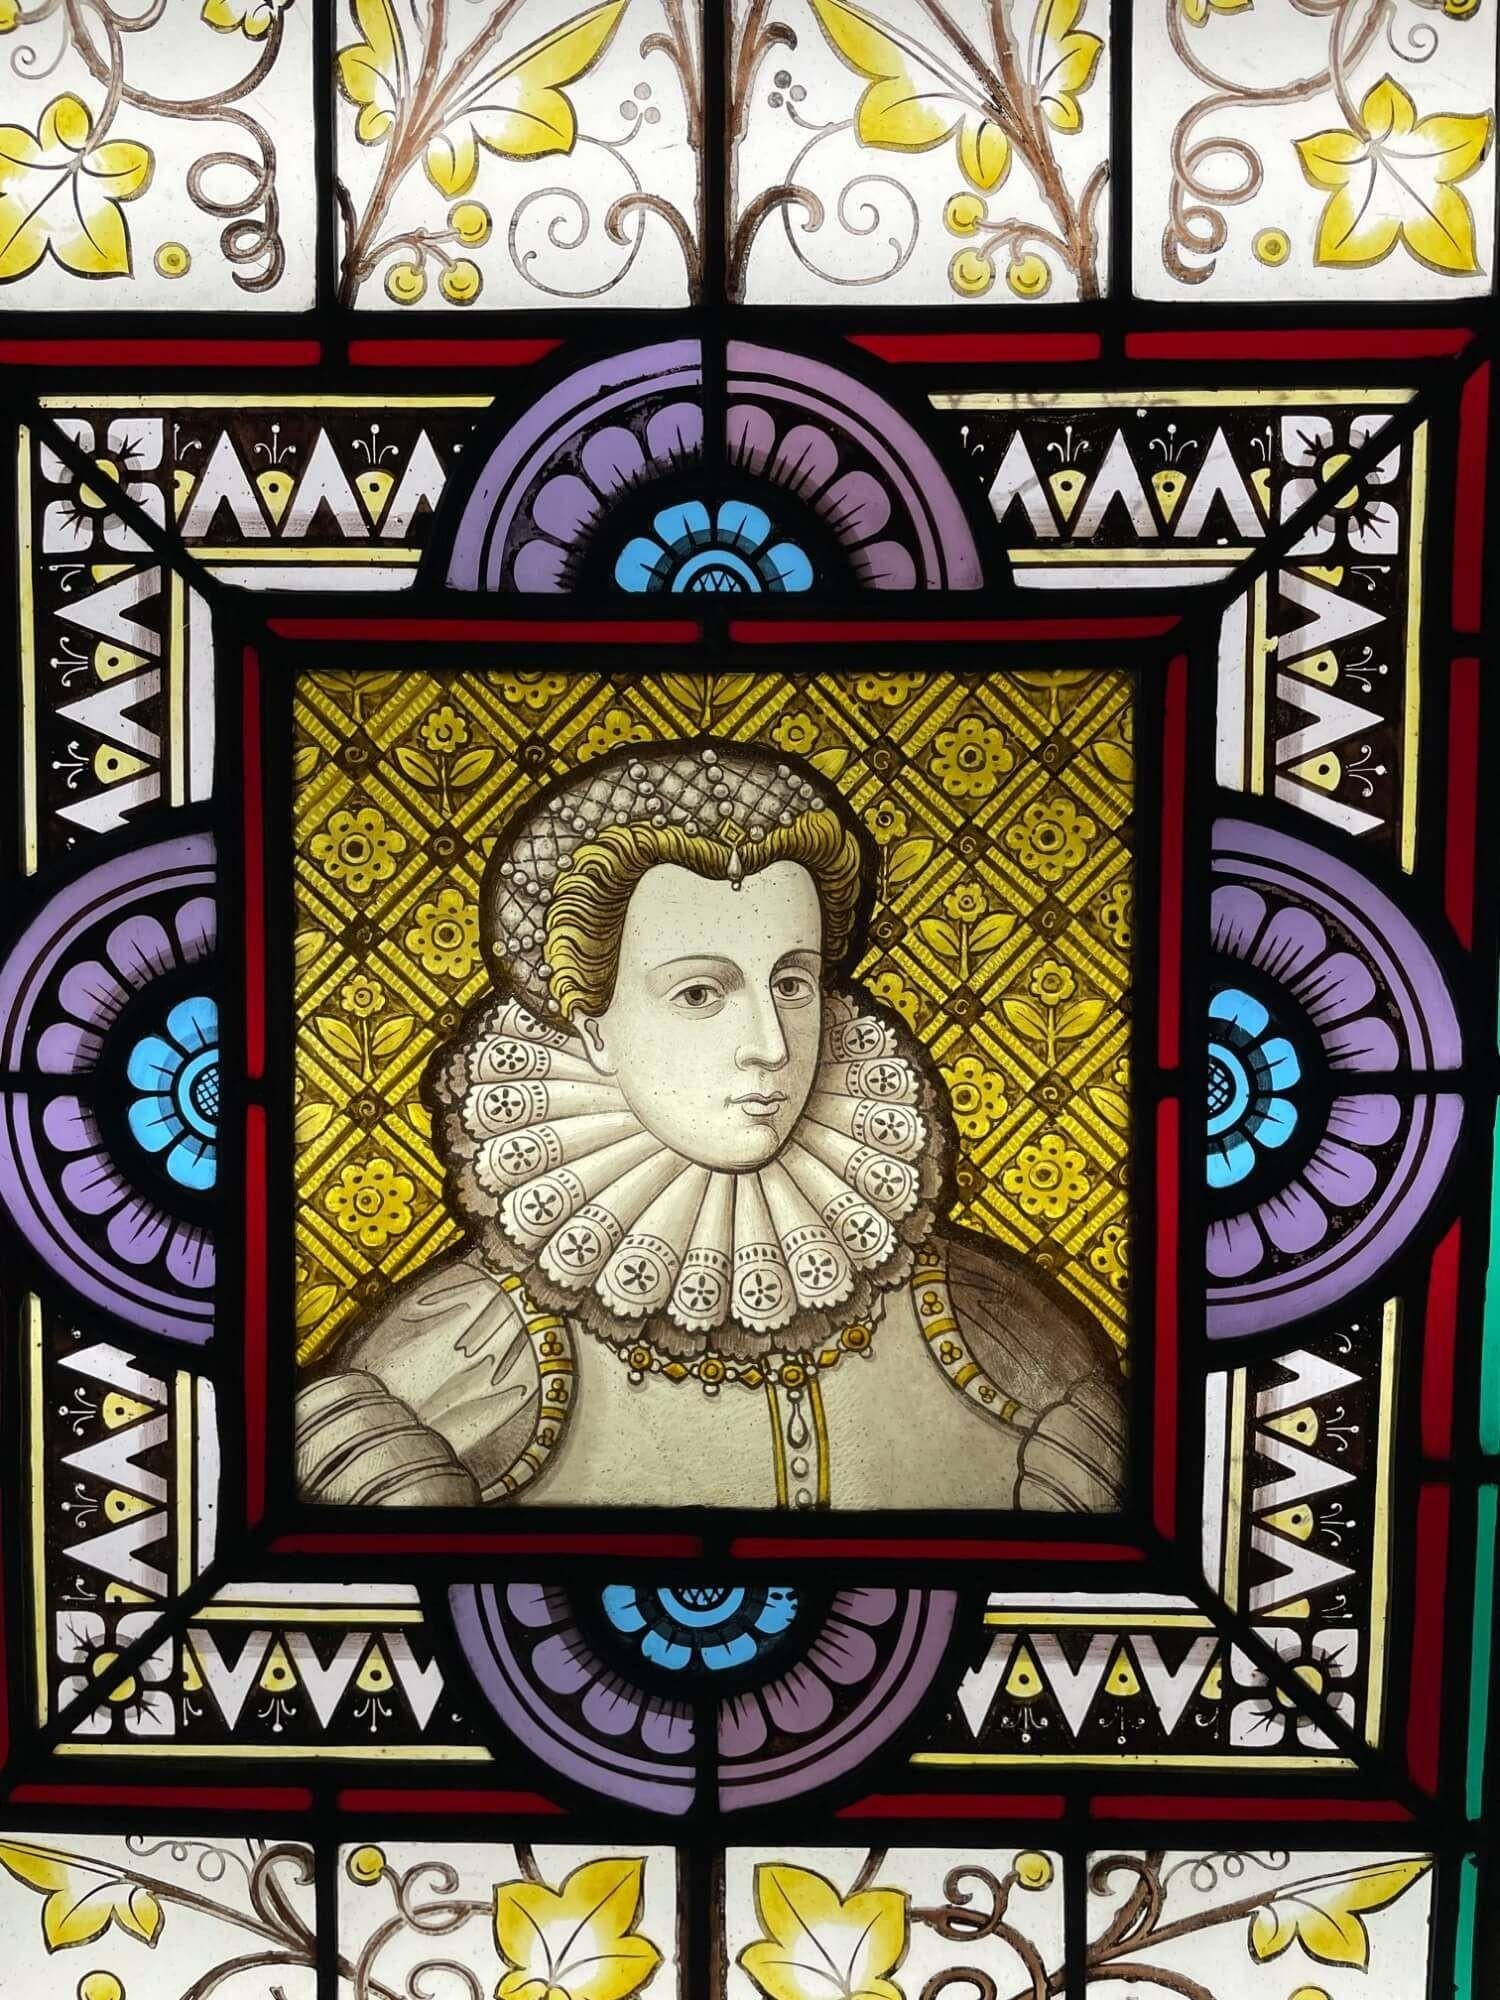 Ein antikes Glasfenster aus dem späten 19. Jahrhundert, das Maria, Königin der Schotten, darstellt, eines von 3 ähnlichen, die wir verkaufen und die bemerkenswerte Persönlichkeiten der britischen Geschichte darstellen. In der Mitte ist Maria Stuart,